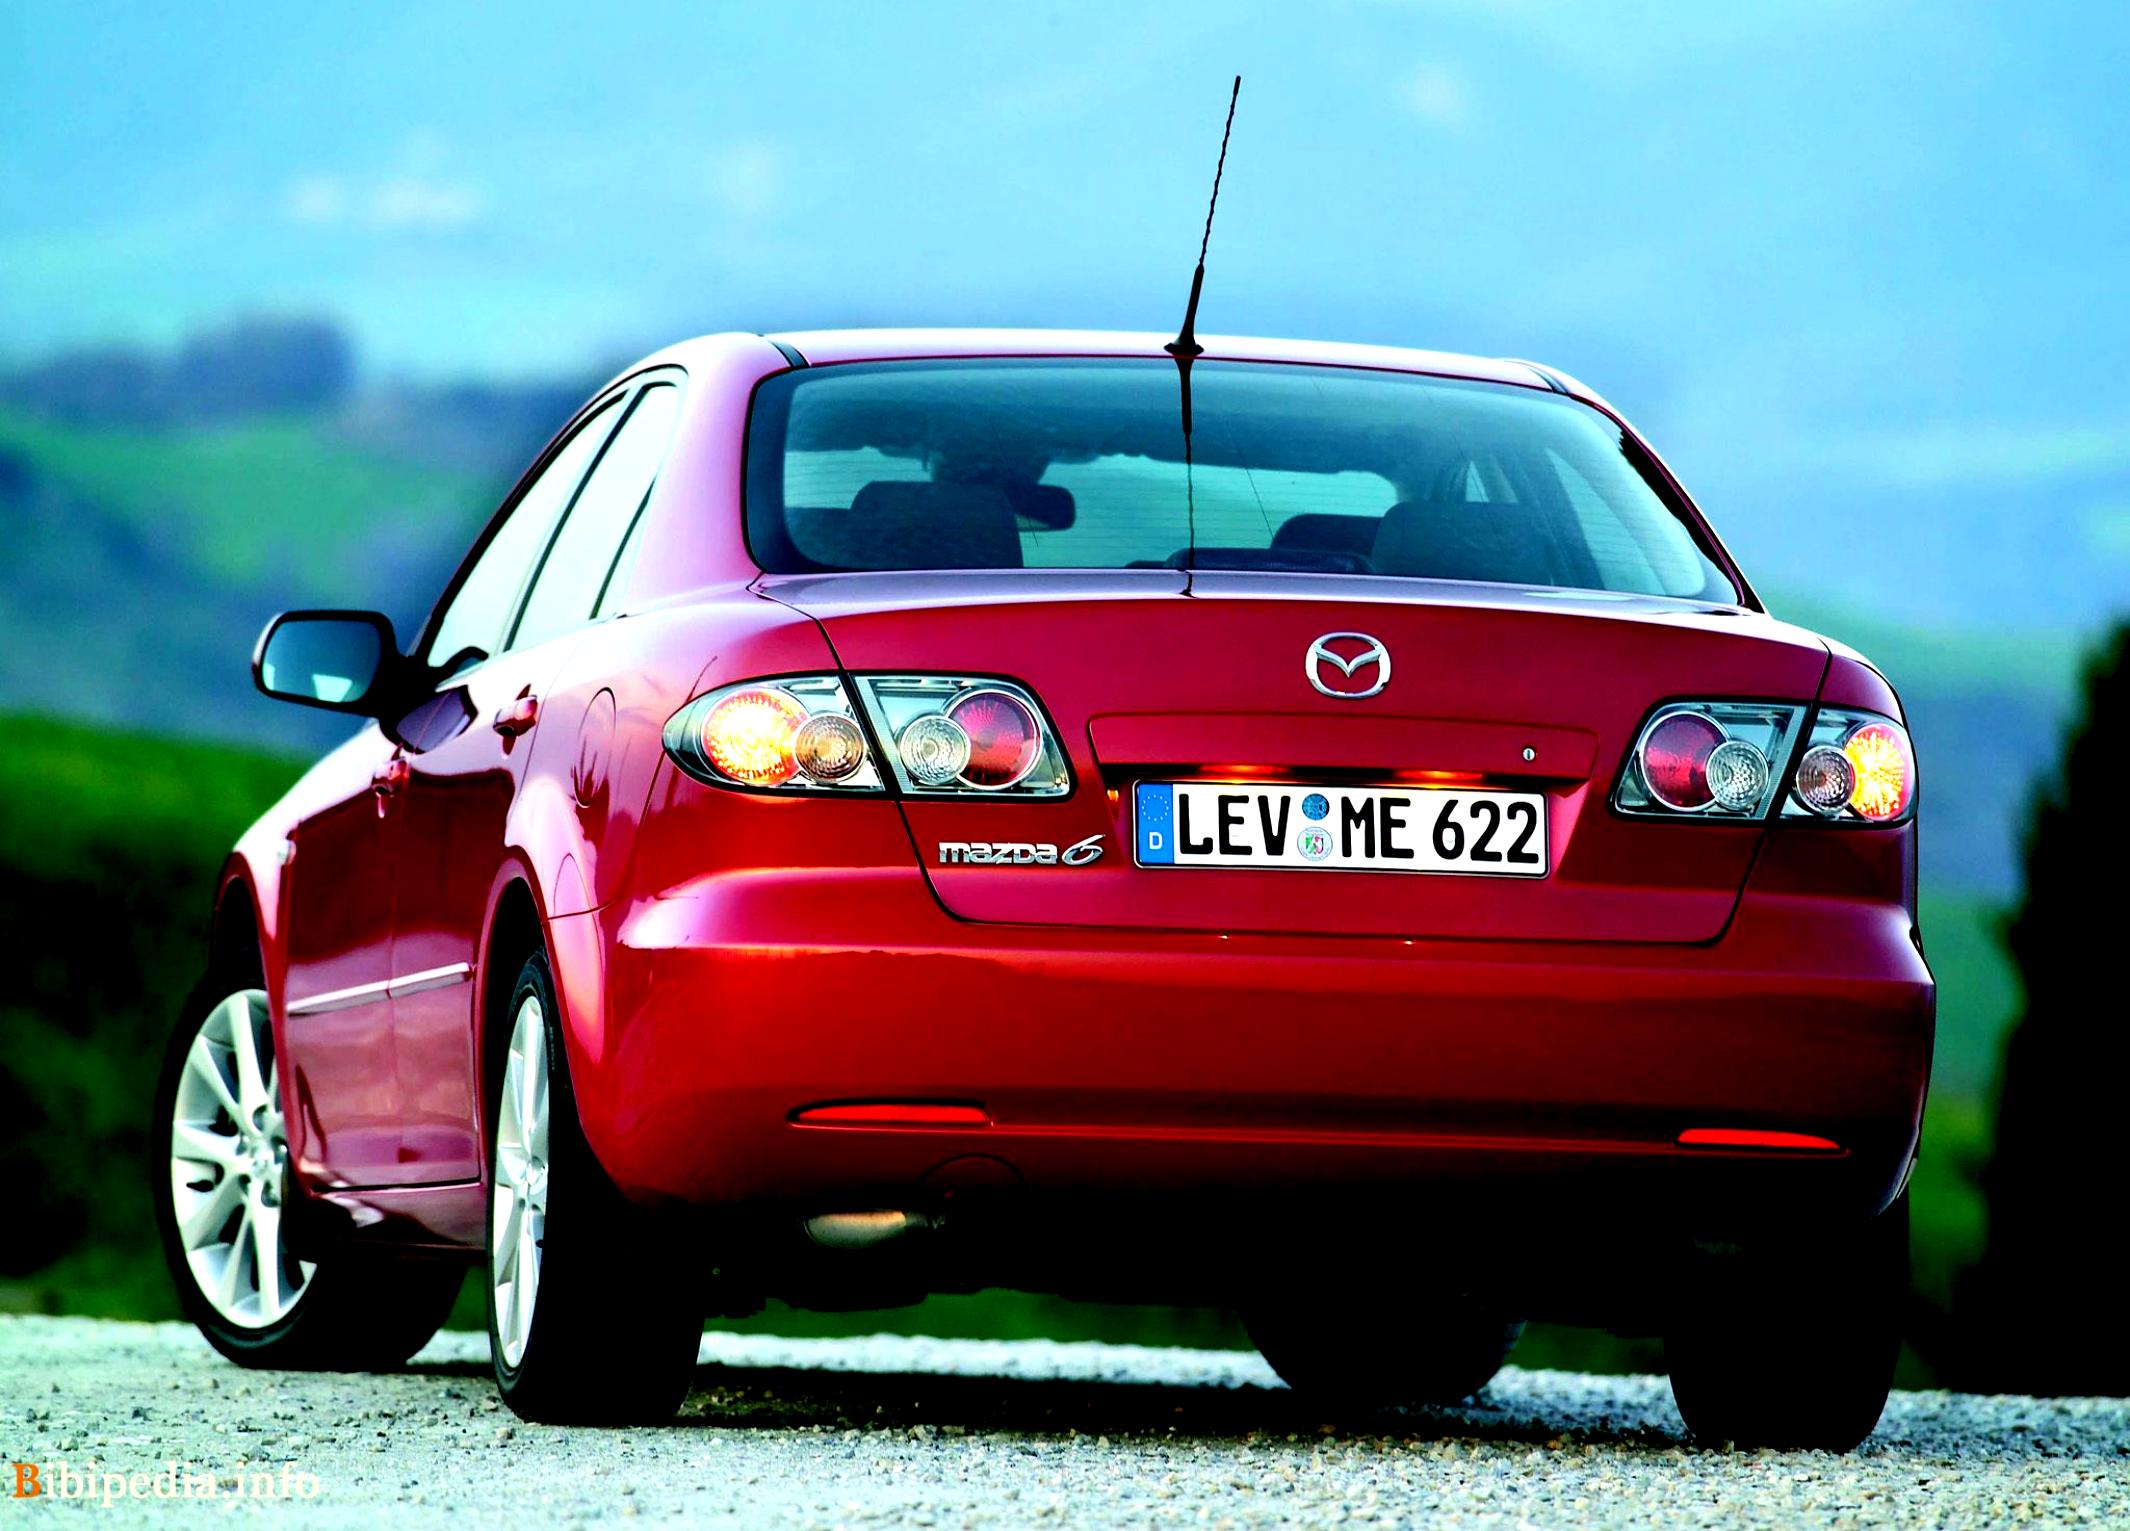 Mazda gg 2007. Mazda 6 gg. Mazda 6 седан 2005. Mazda 6 gg 2005. Mazda 6 gg (2002-2007).